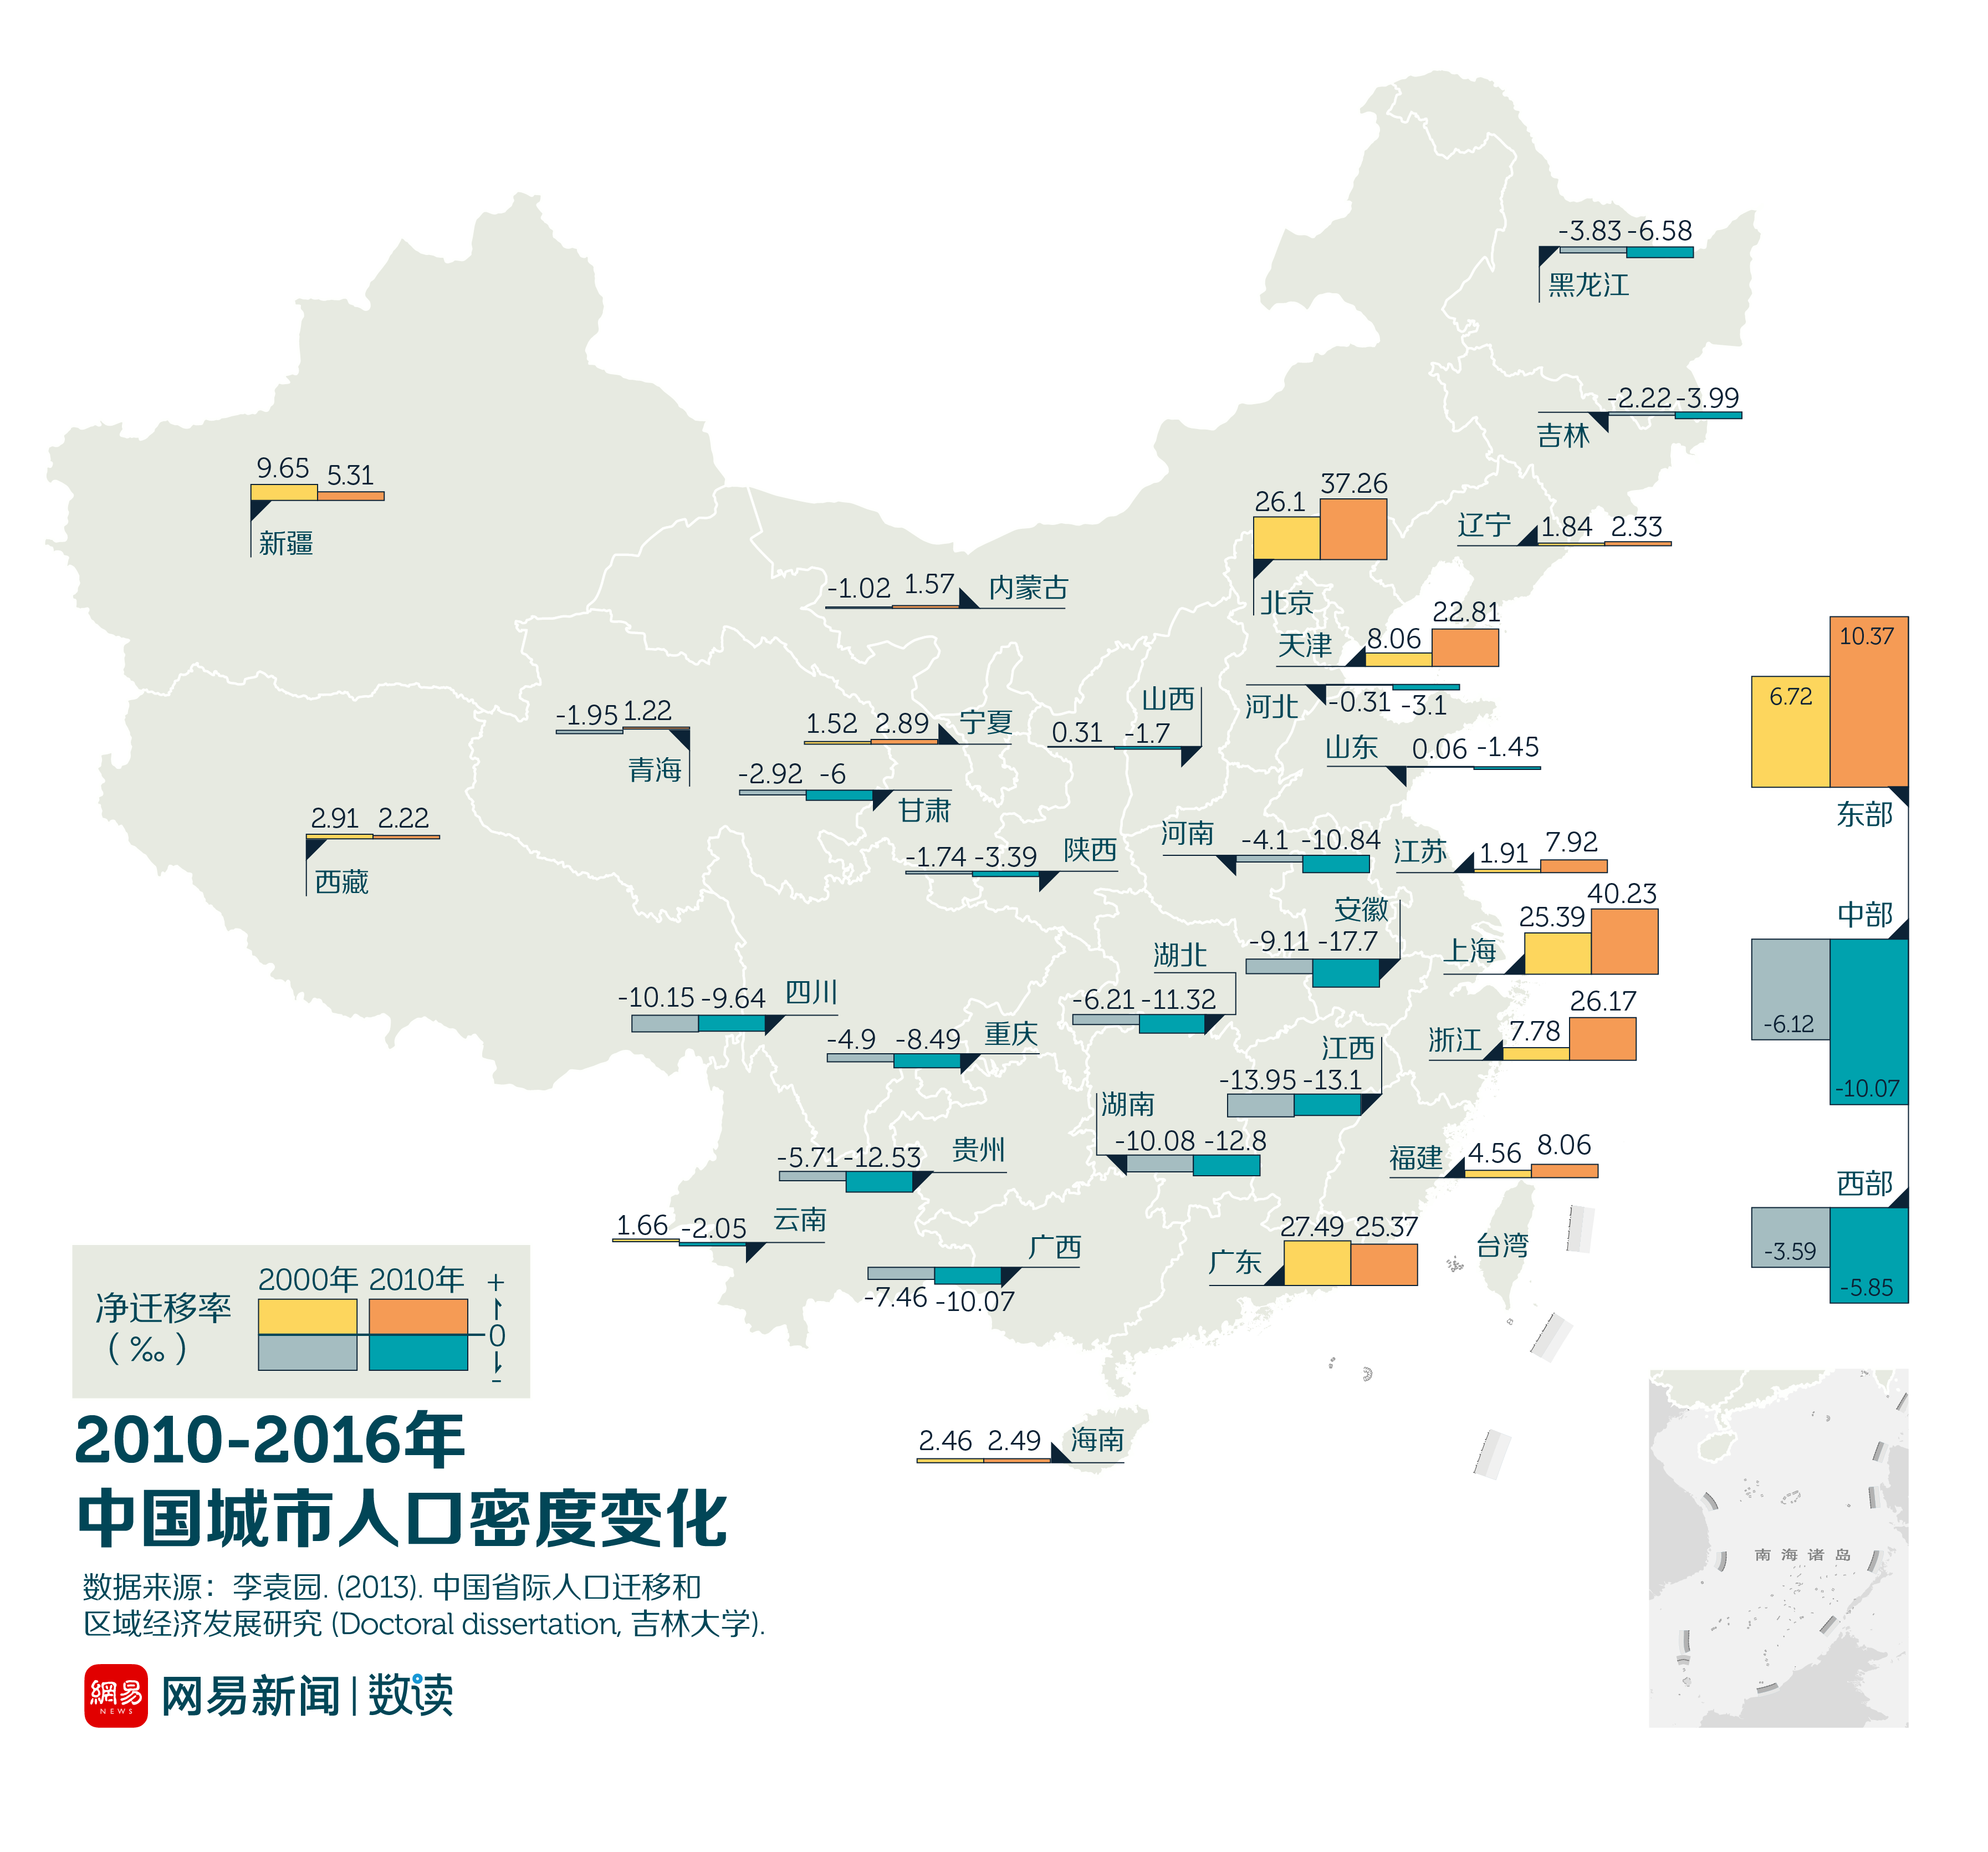 分析633个中国城市,发现四成在流失人口